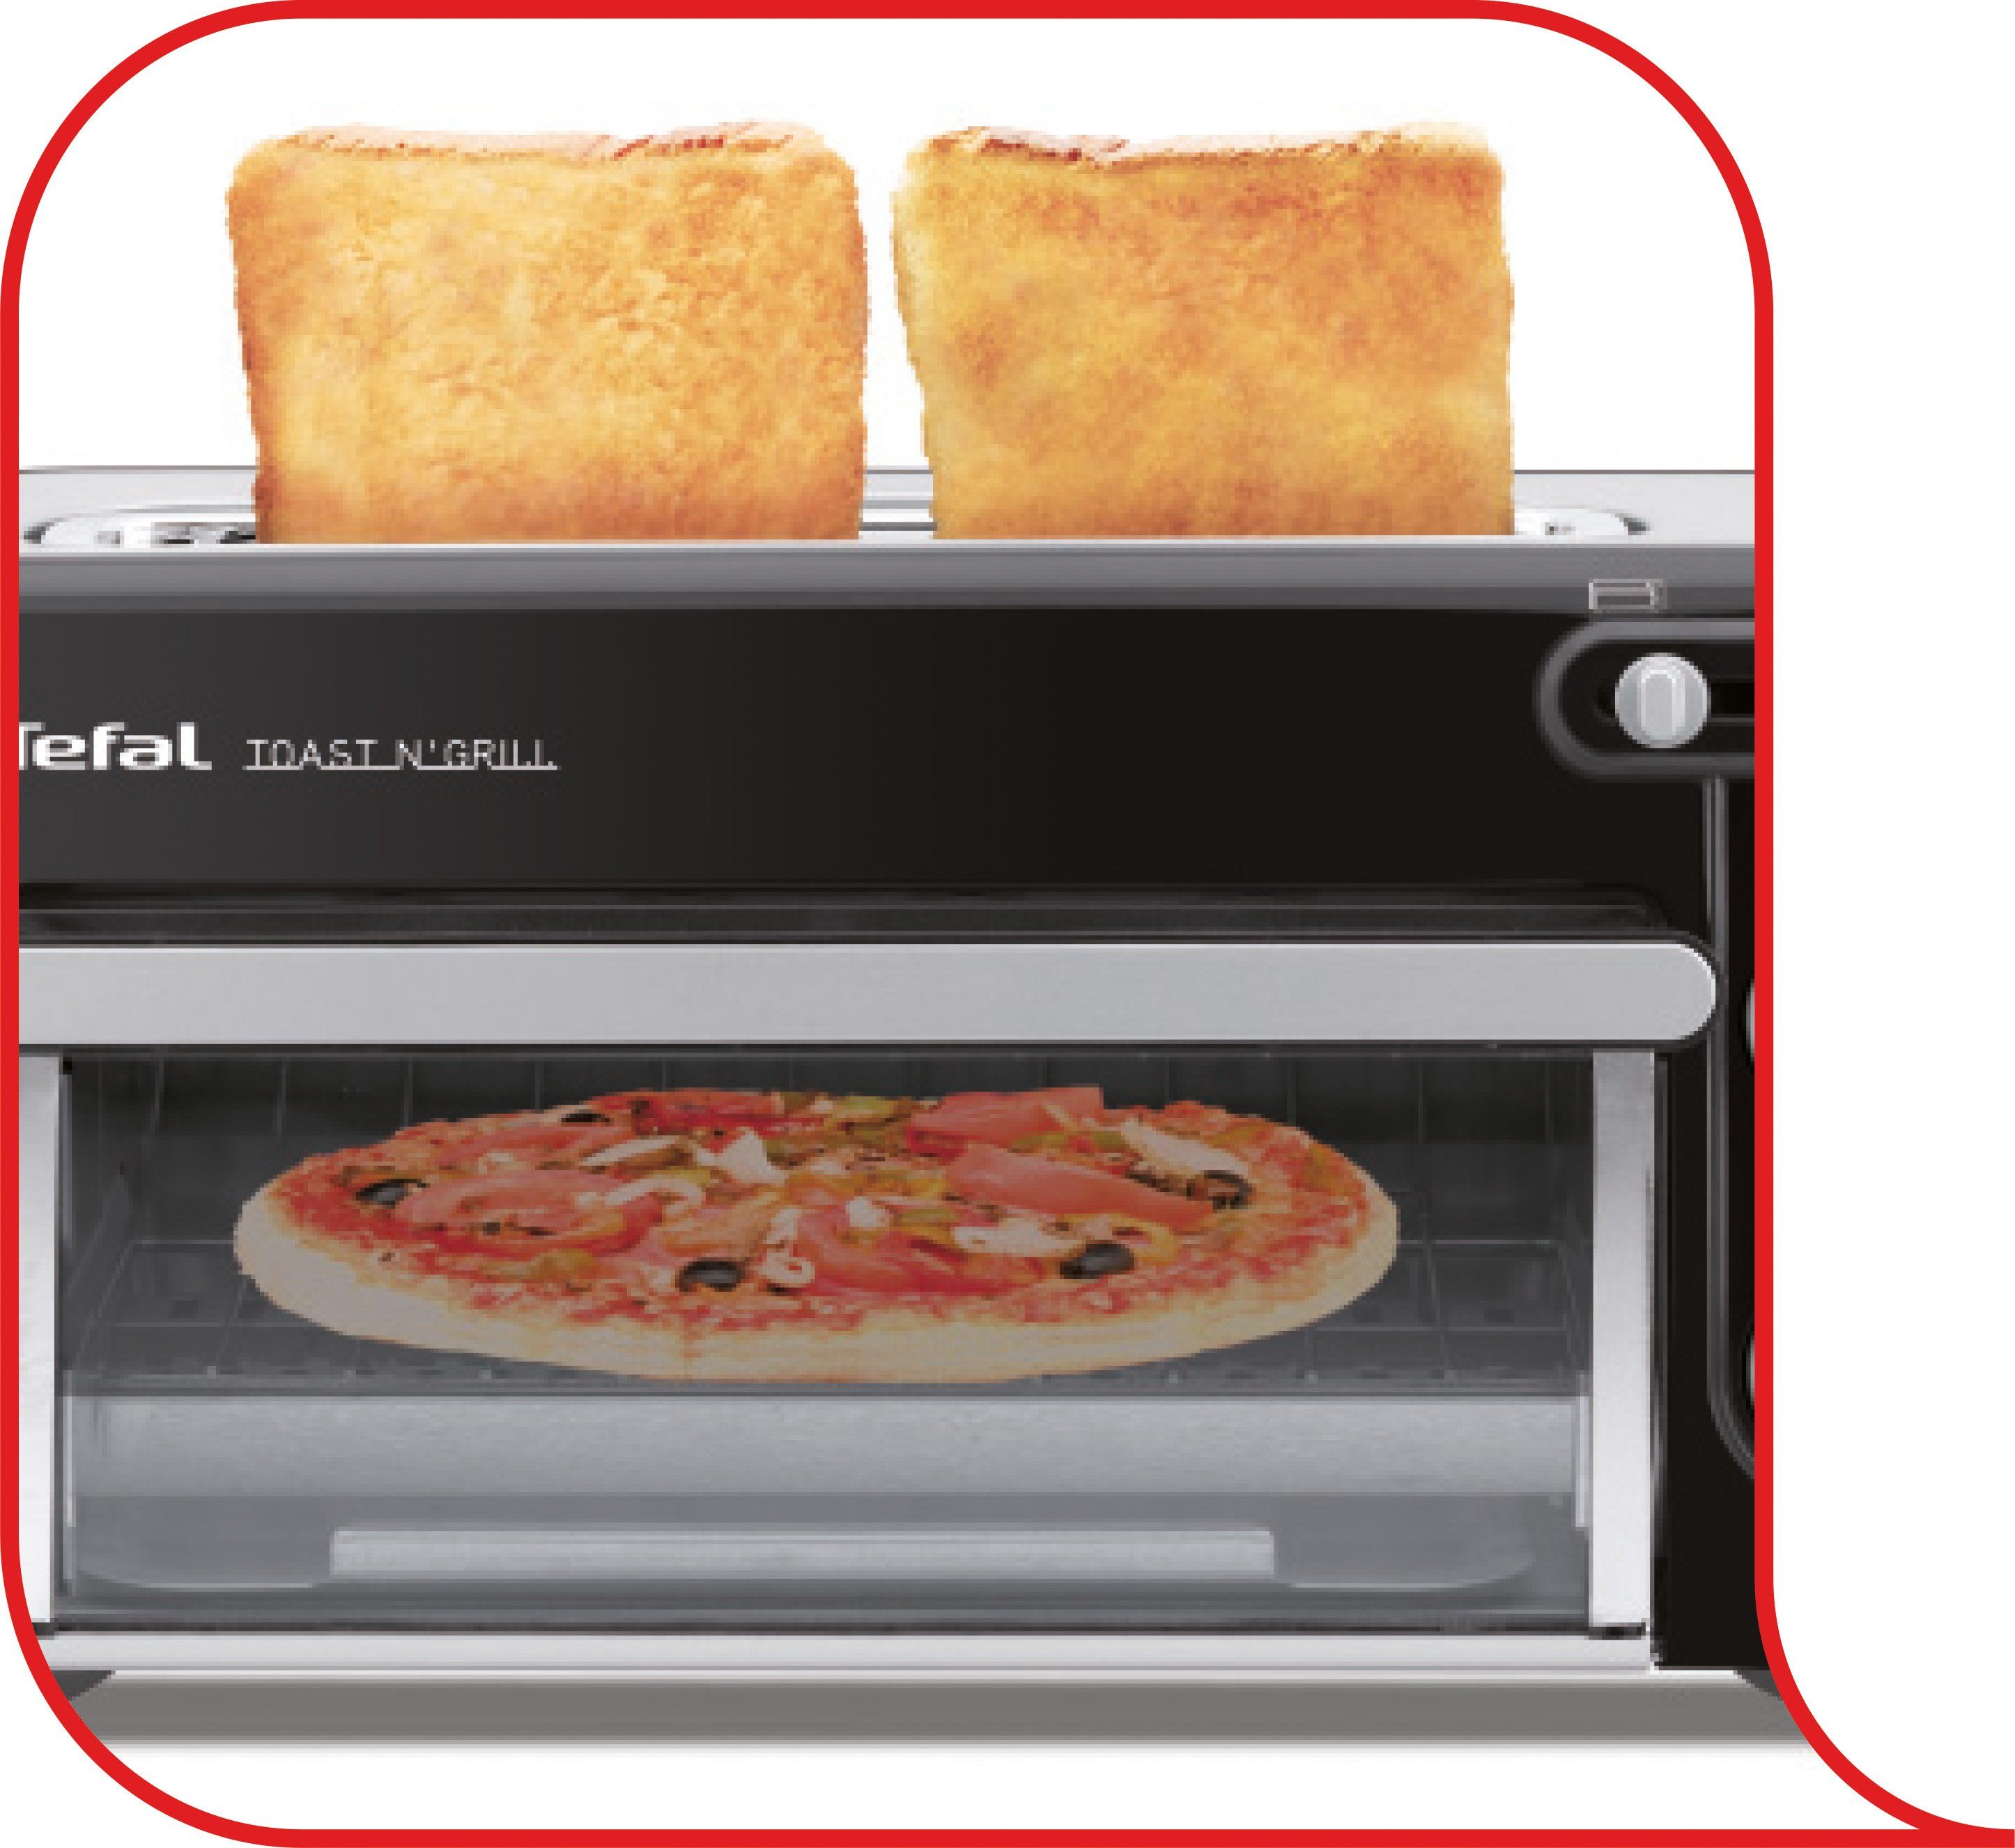 Tefal Mini-oven TL6008 Toast n' zeer energiezuinig en snel, w makkelijk besteld | OTTO